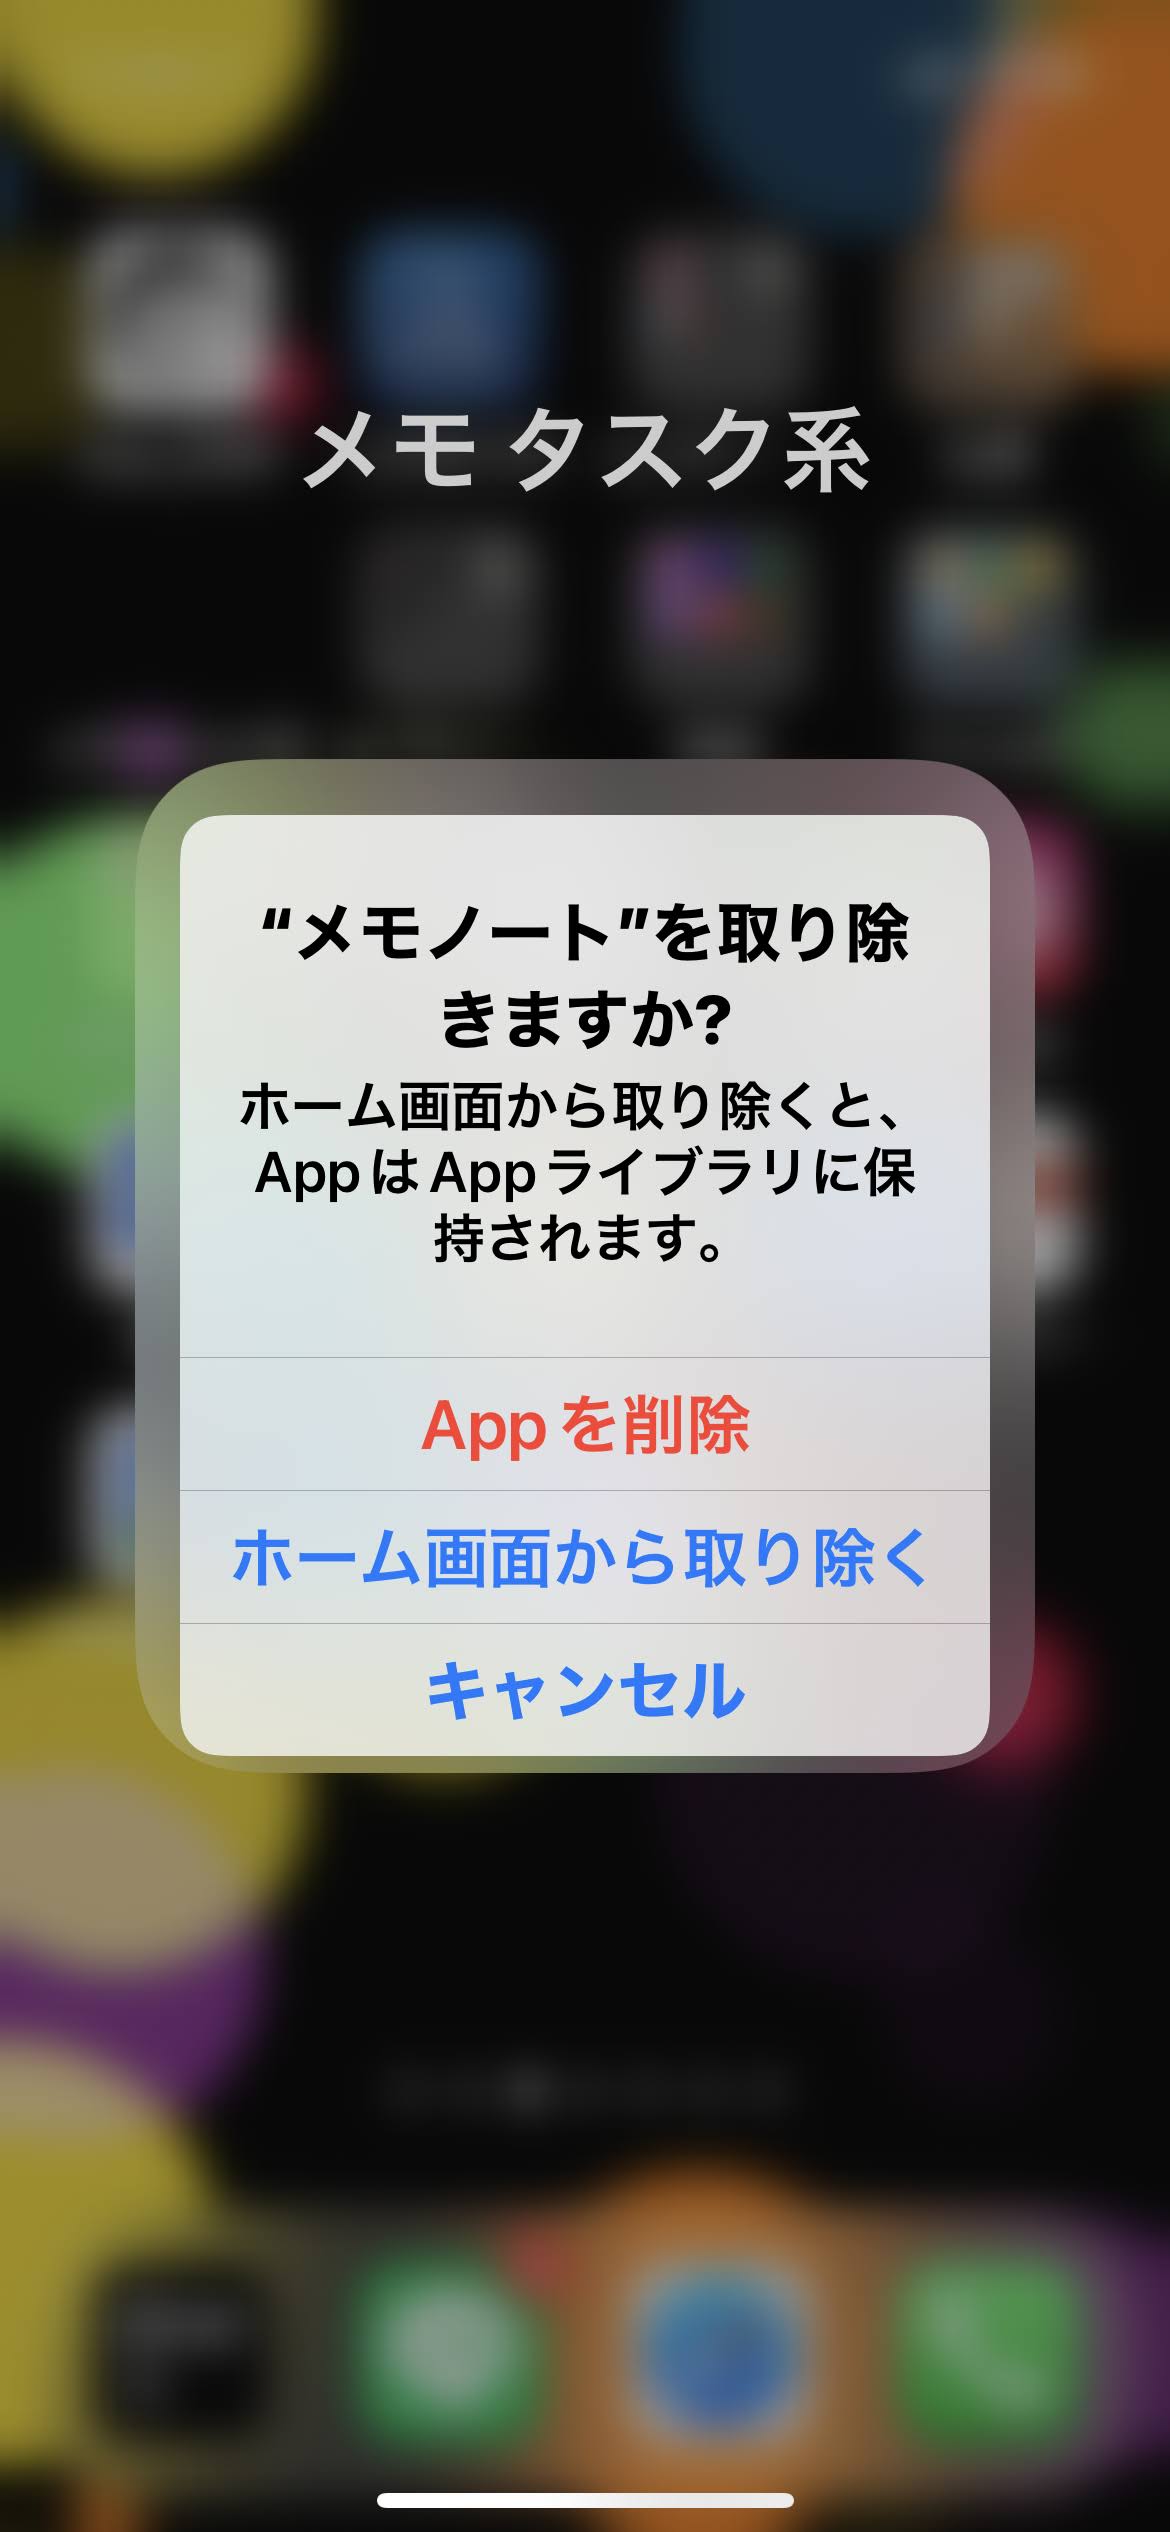 App削除かホーム画面から取り除くが選択できる。